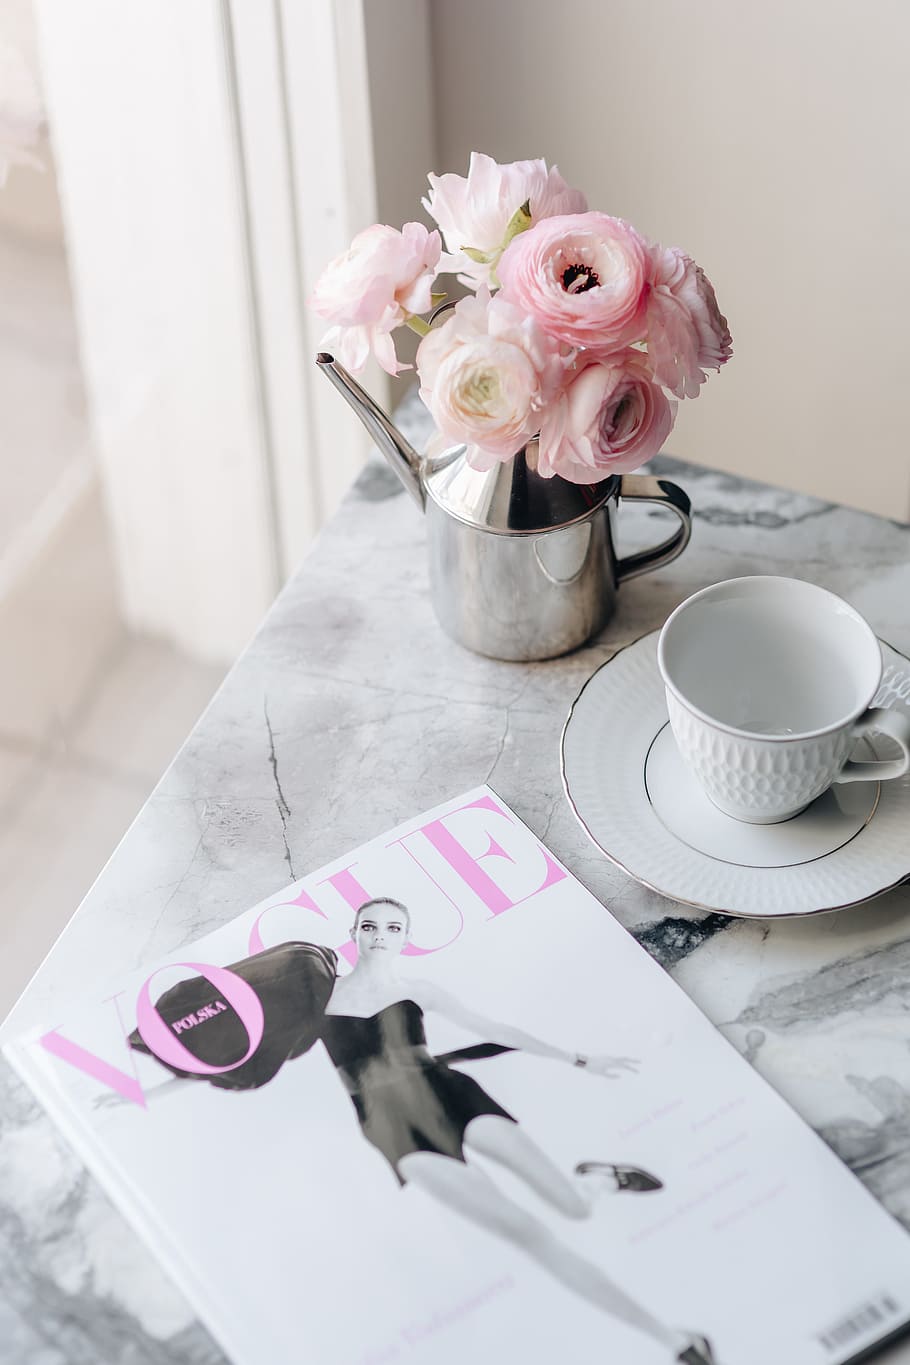 vogue poland 2 2018, &, indah, bunga buttercup, flora, lucu, majalah, bunga, mode, pink